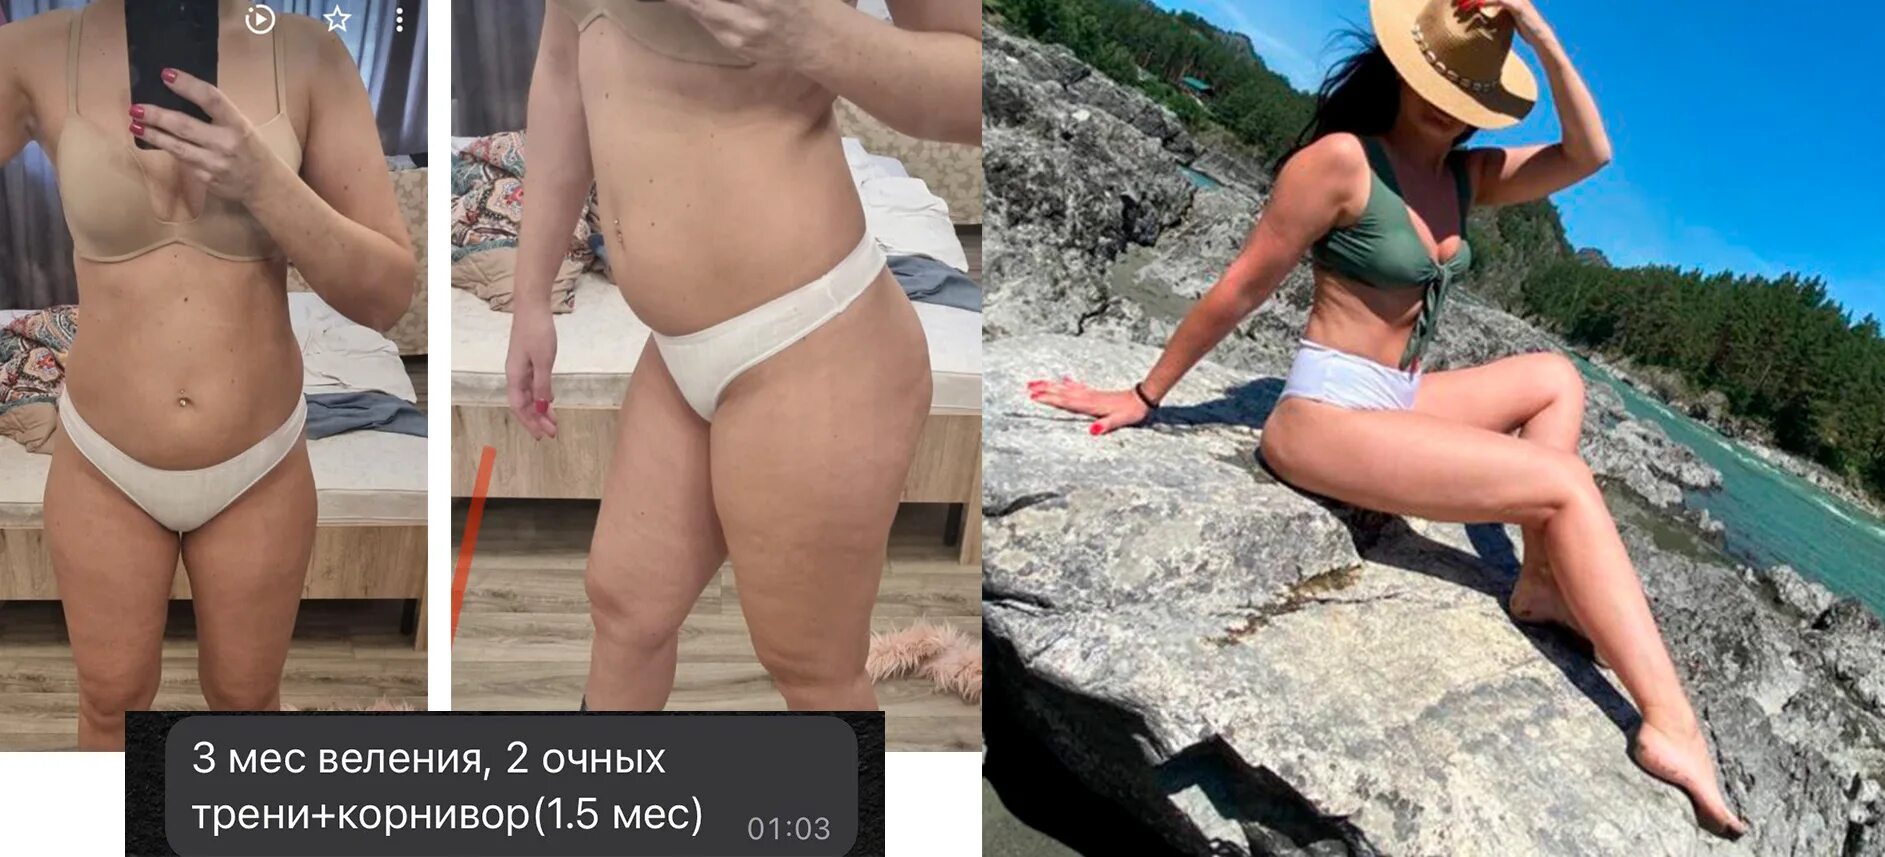 Минус 10 кг. - 10 Кг до и после в купальнике. Юля Науменко похудения. Разница 10 кг